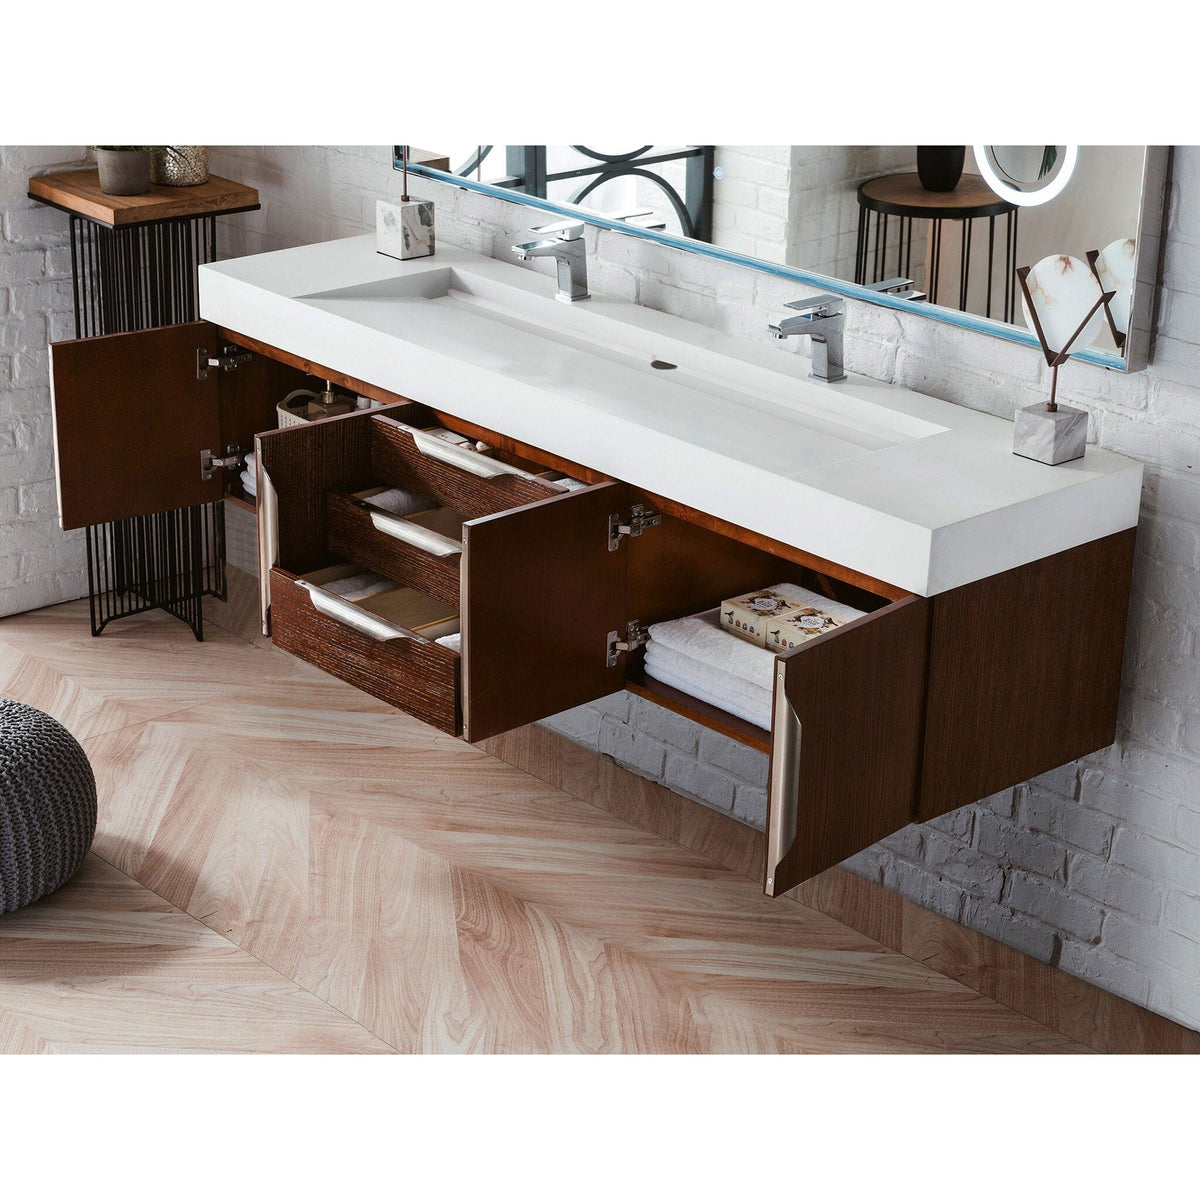 72" Mercer Island Double Bathroom Vanity, Coffee Oak - vanitiesdepot.com